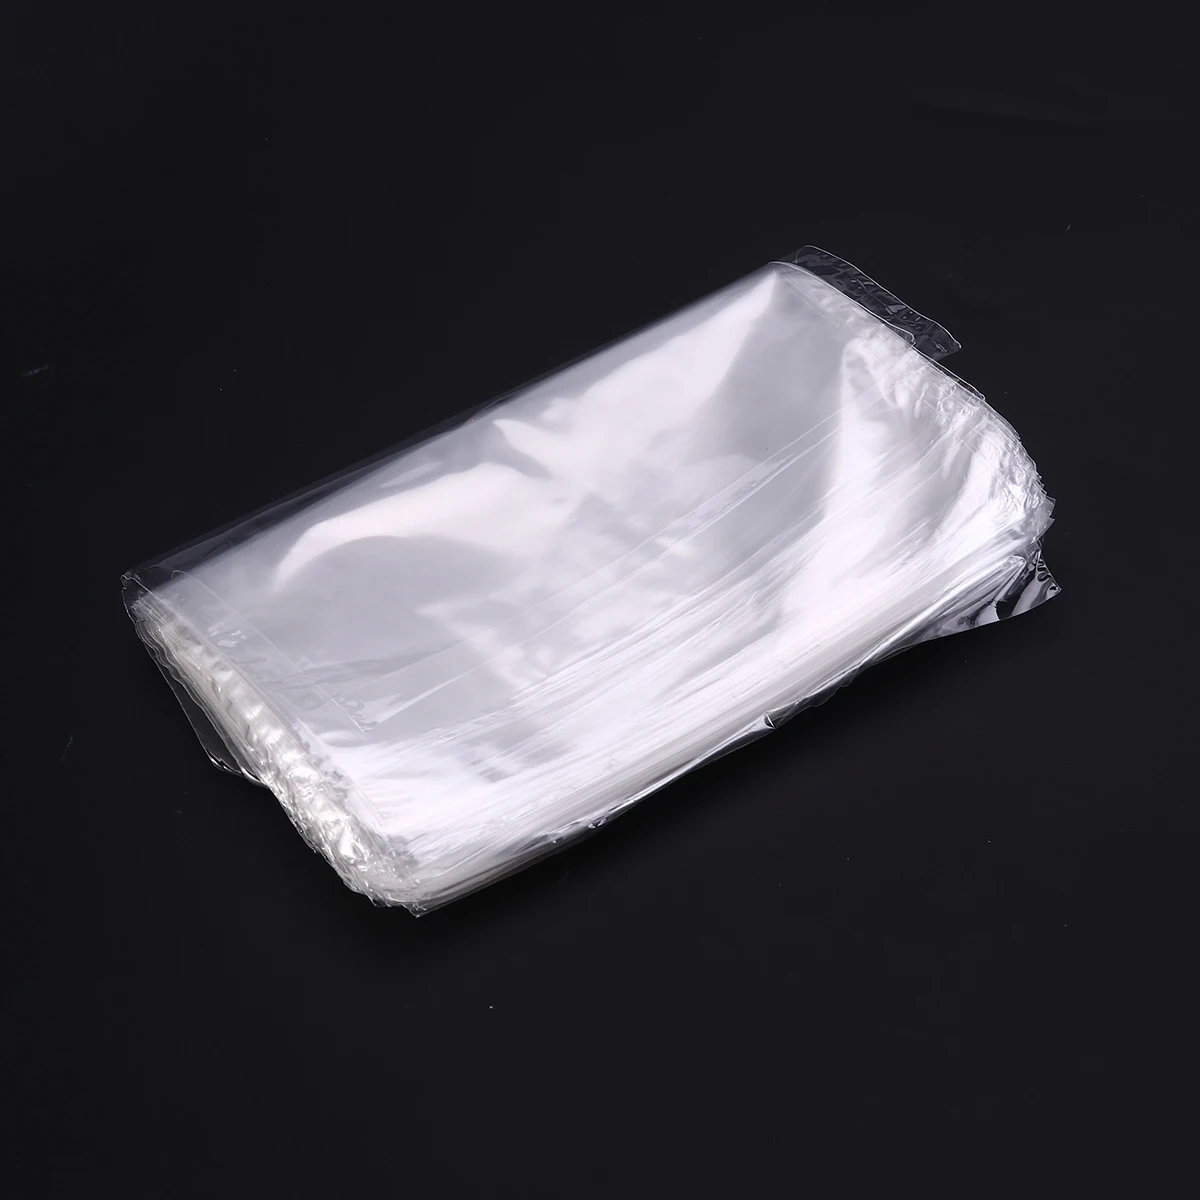 200 шт 6X6 дюймов POF термоусадочные пакеты водонепроницаемые для мыла бомбы для ванны и самодельных поделок мягкая прозрачная упаковка из термоусадочной пленки, для косметики